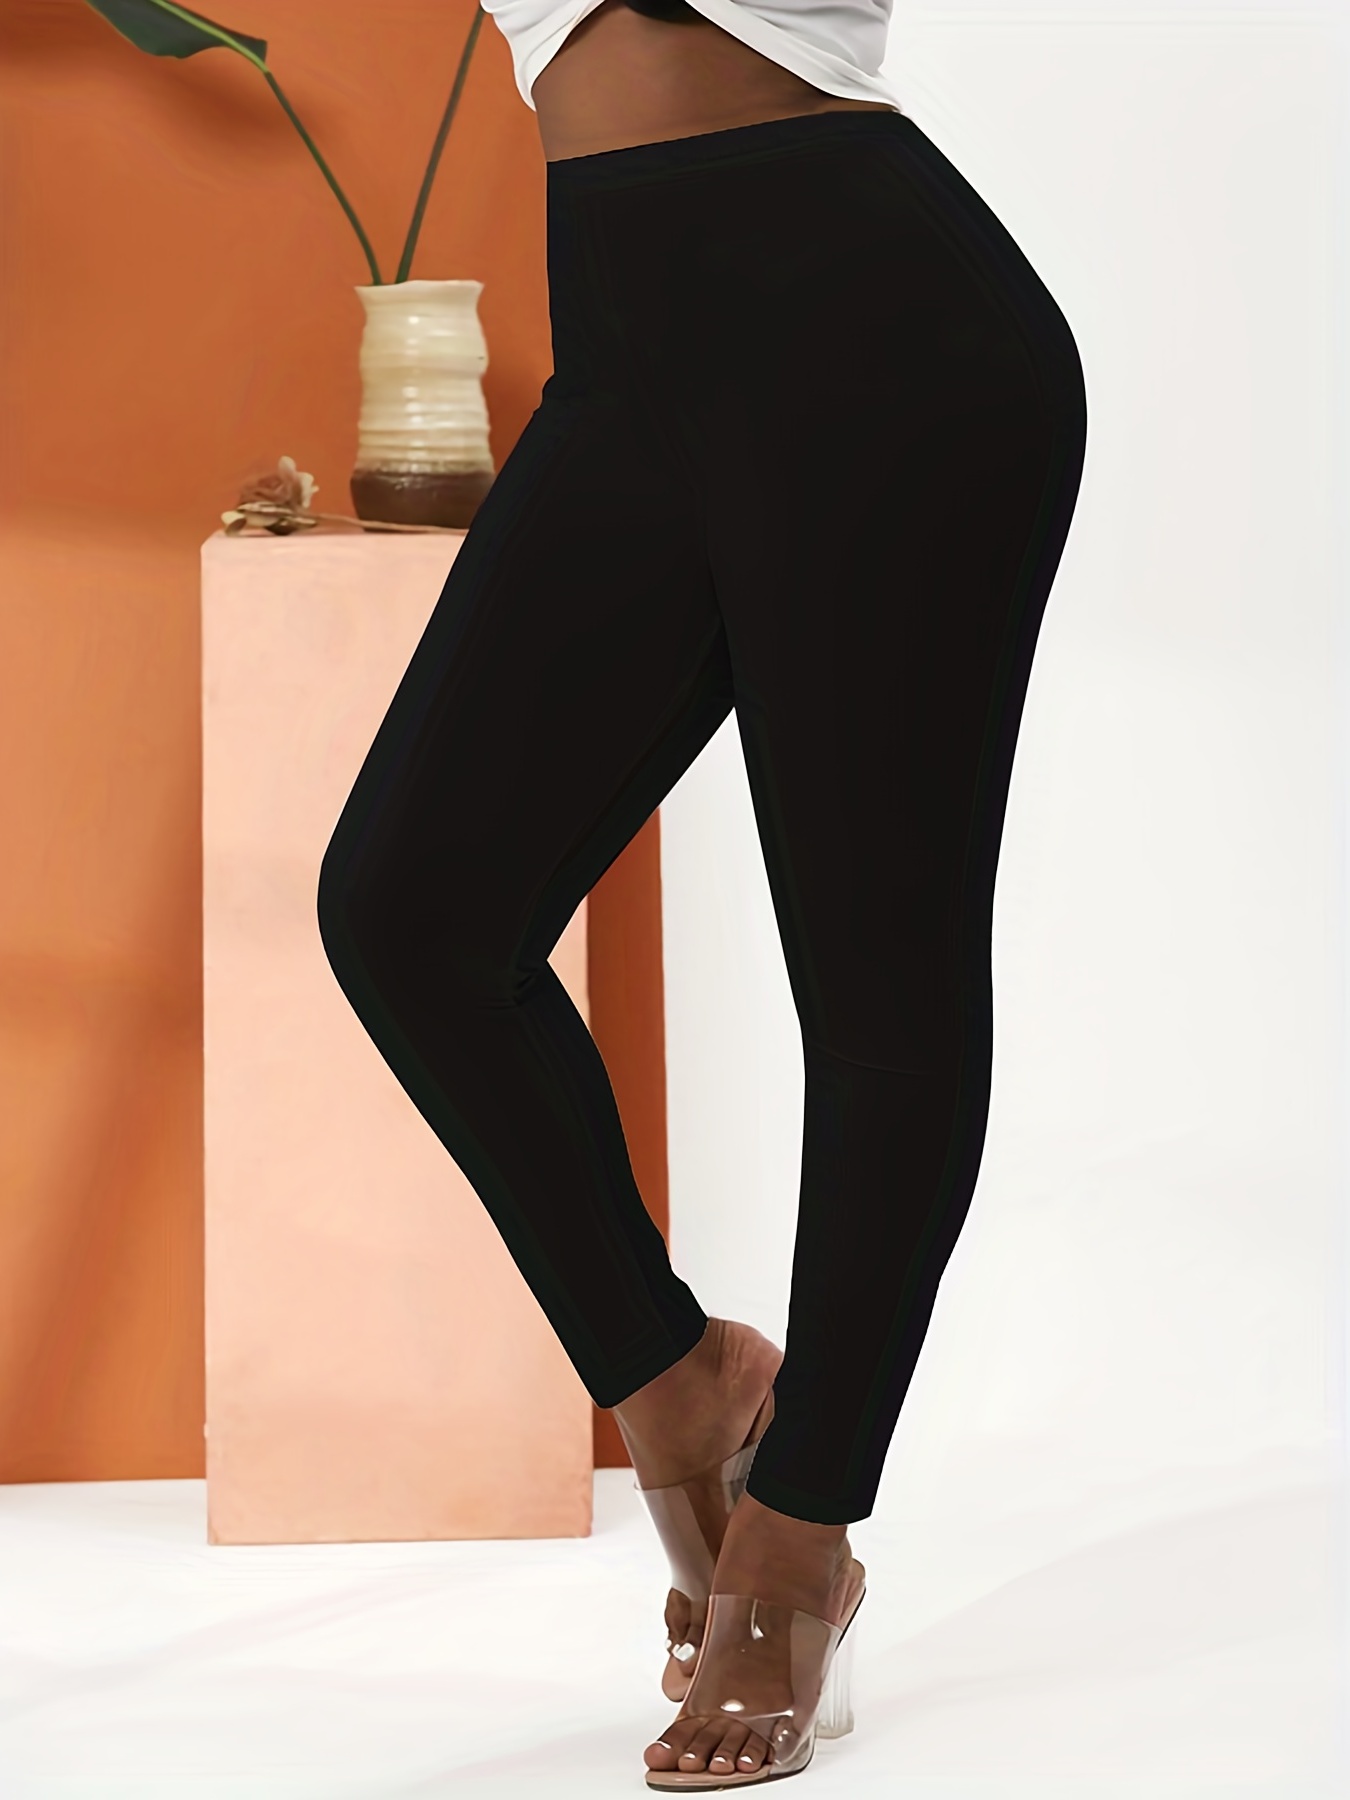 Skinny Cotton Fitness Black Cotton Leggings For Women High Waist